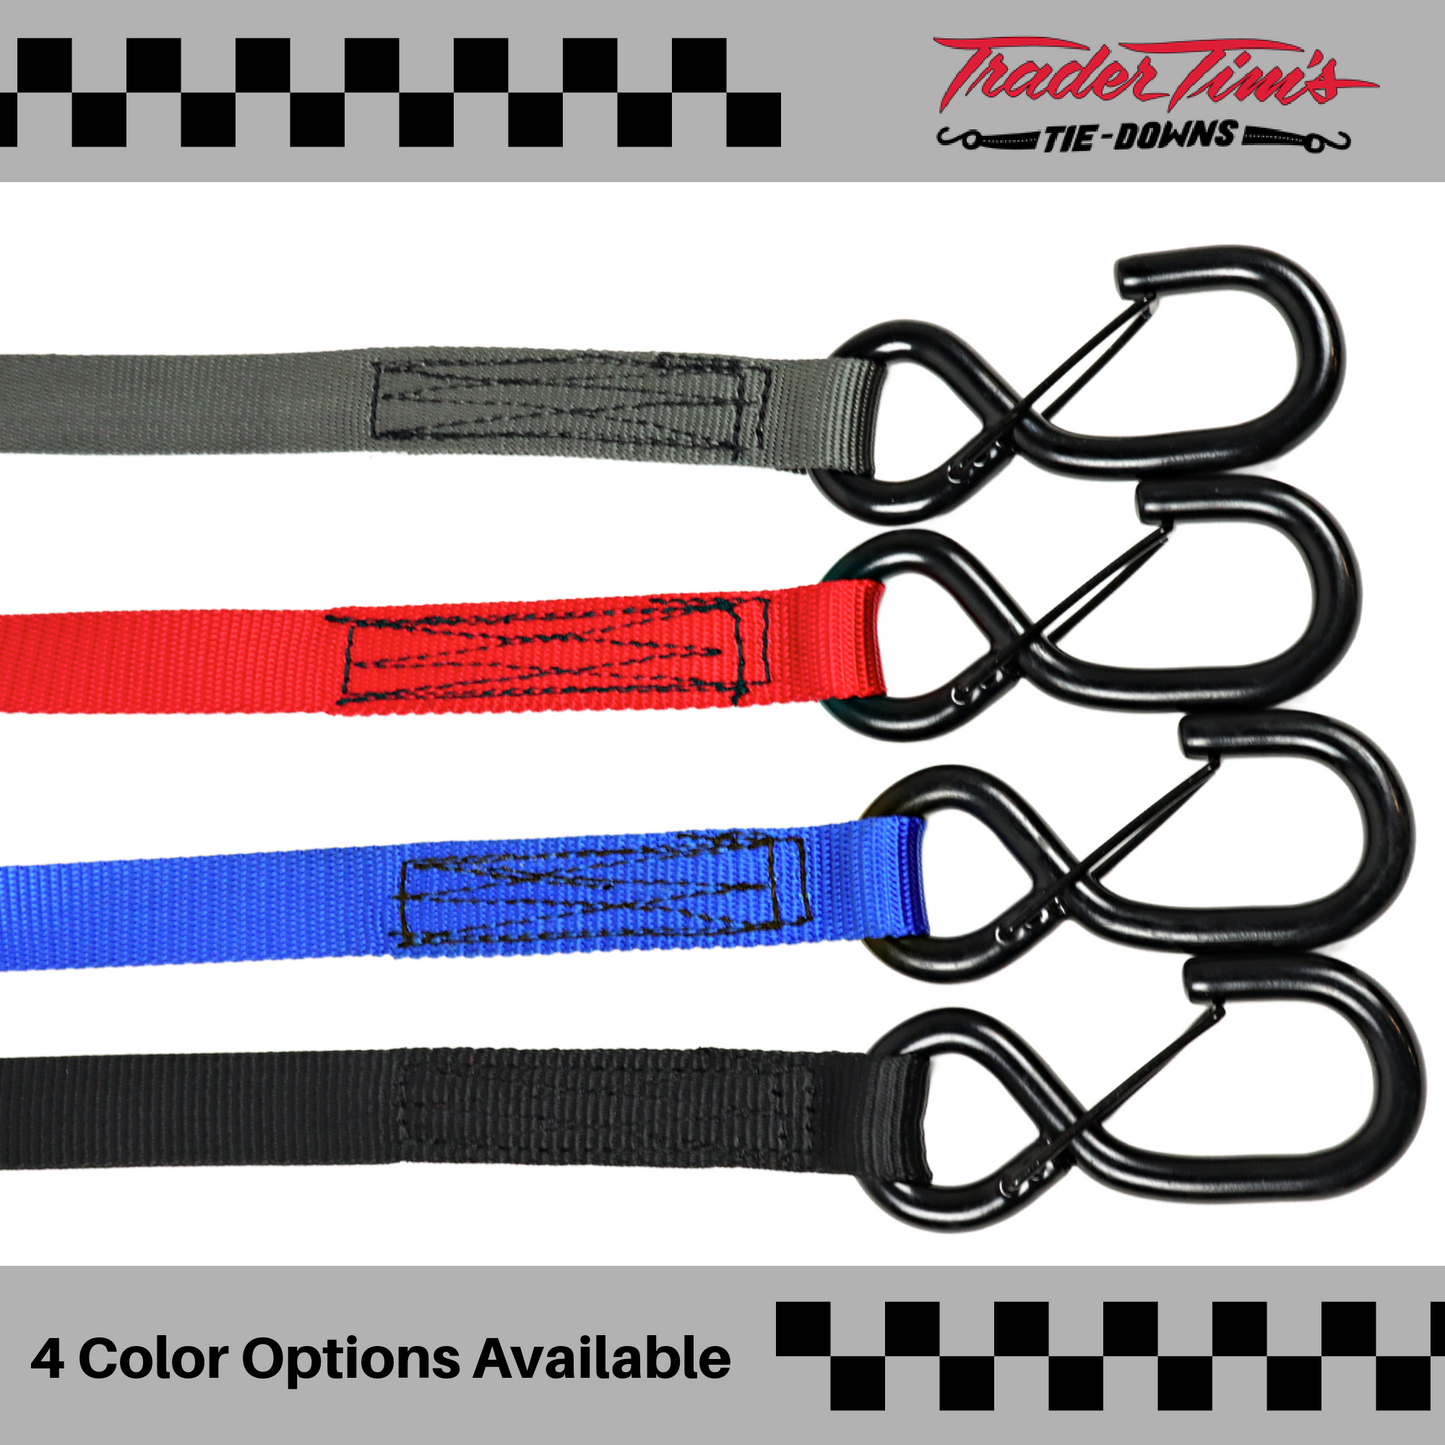 1" Ratchet Tie Down - Size & Color Options